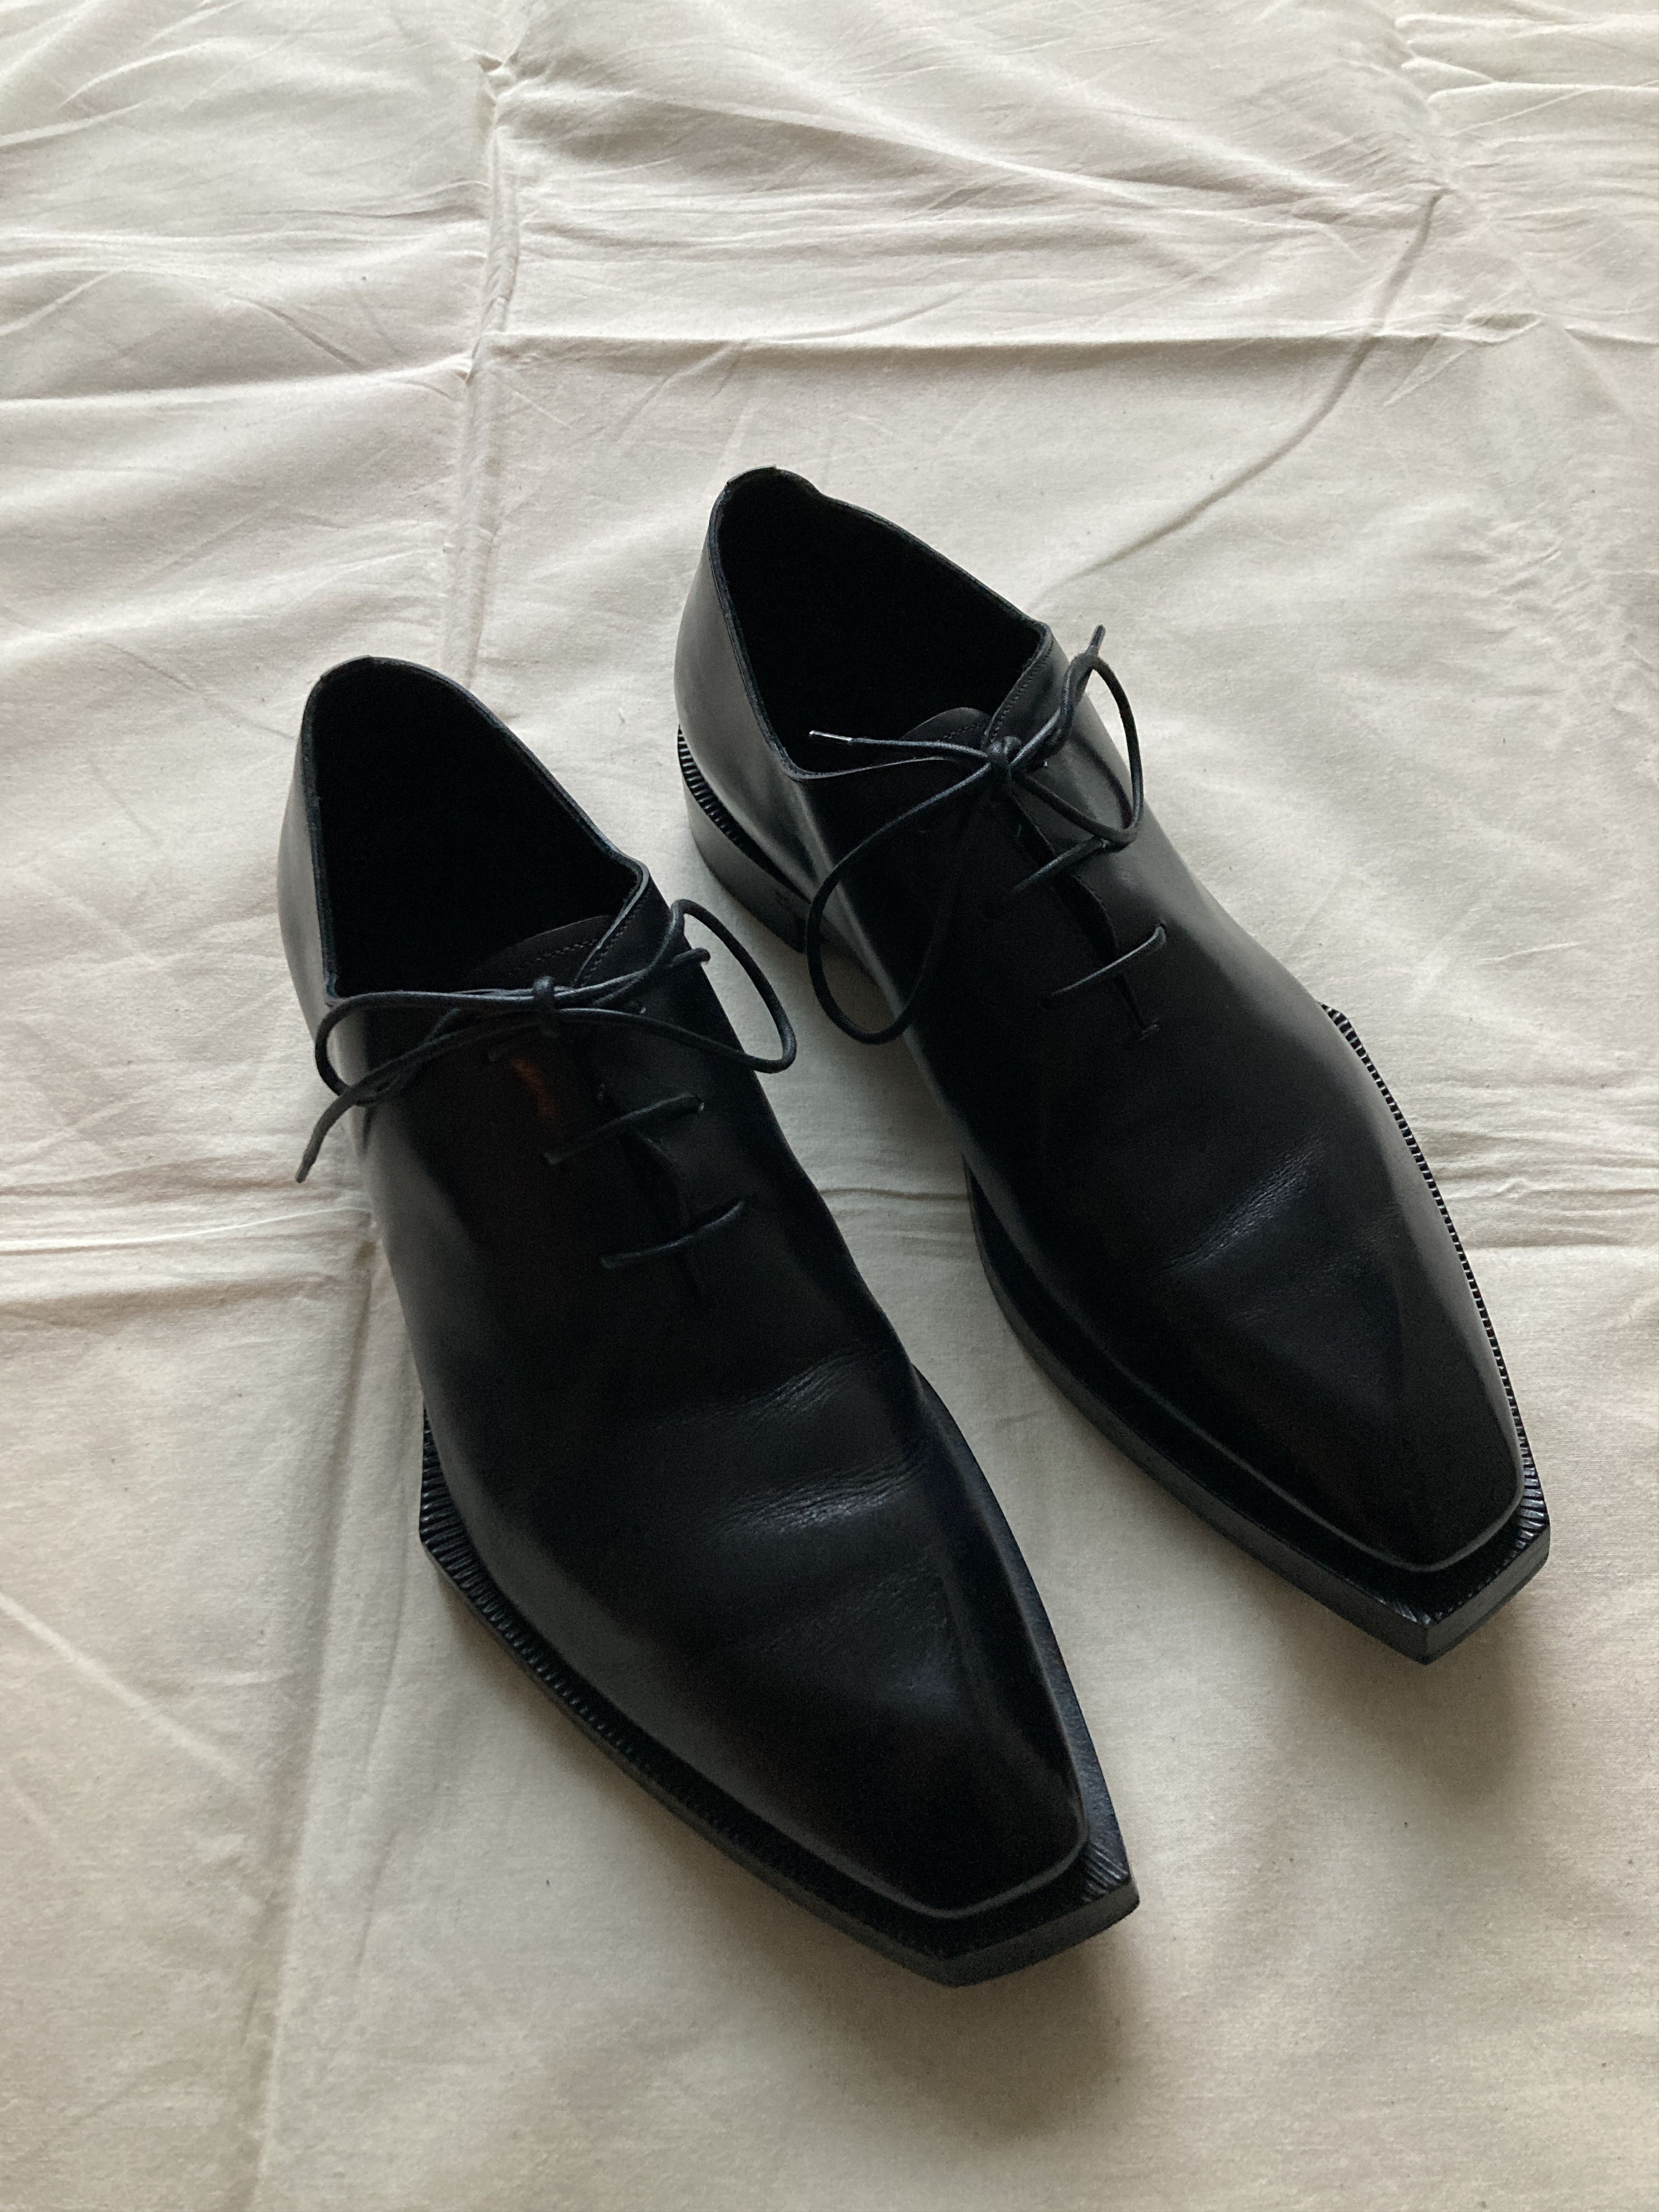 Kris Van Assche Black Alessandro Edge Oxford Shoes | Grailed